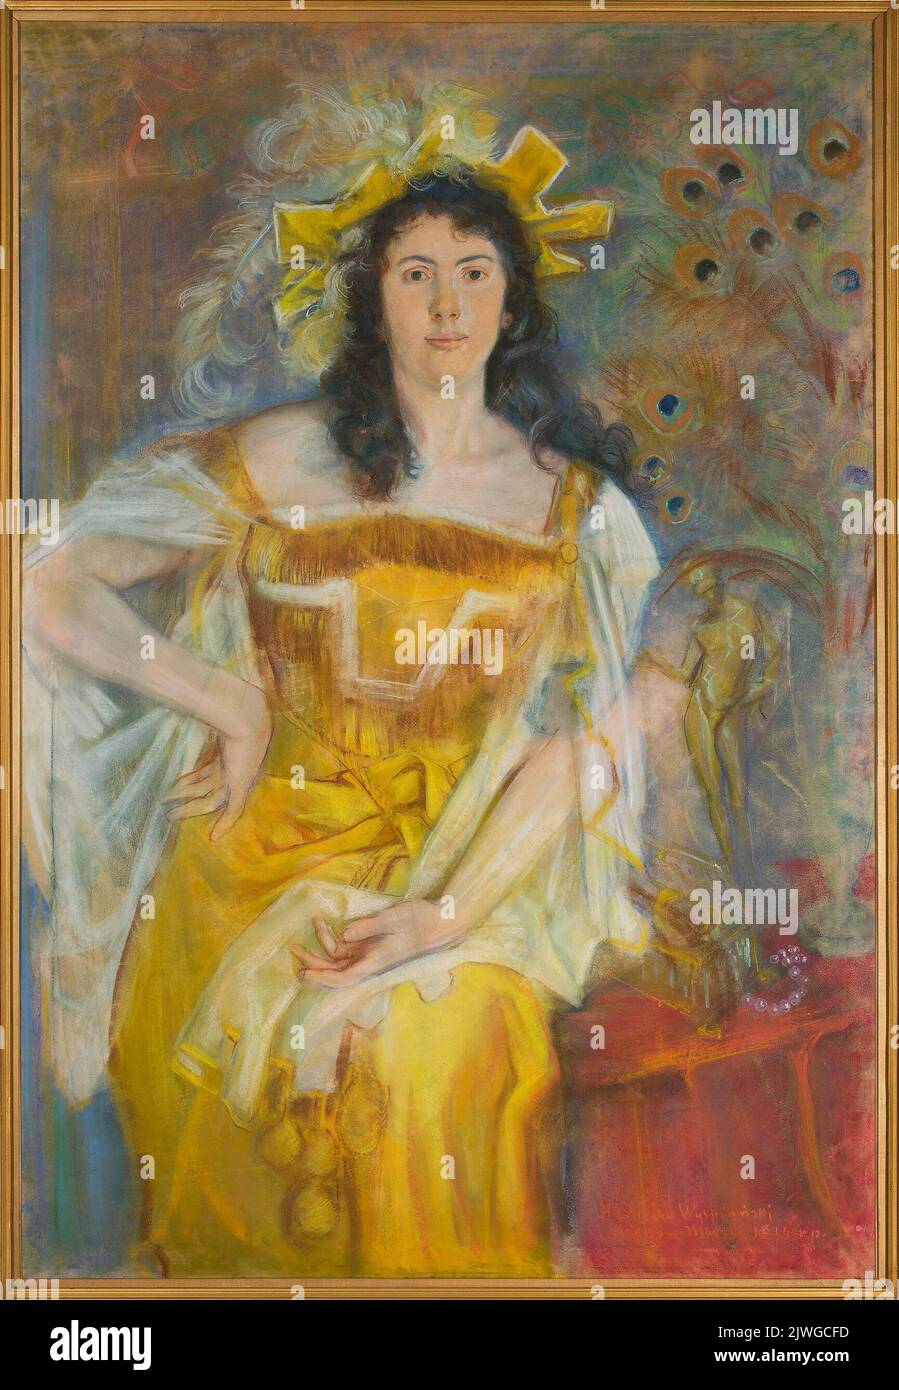 Porträt von Honorata Leszczyńska als Katherine in „die Zähmung der Spitzmaus“ von William Shakespeare. Wyspiański, Stanisław (1869-1907), Maler Stockfoto